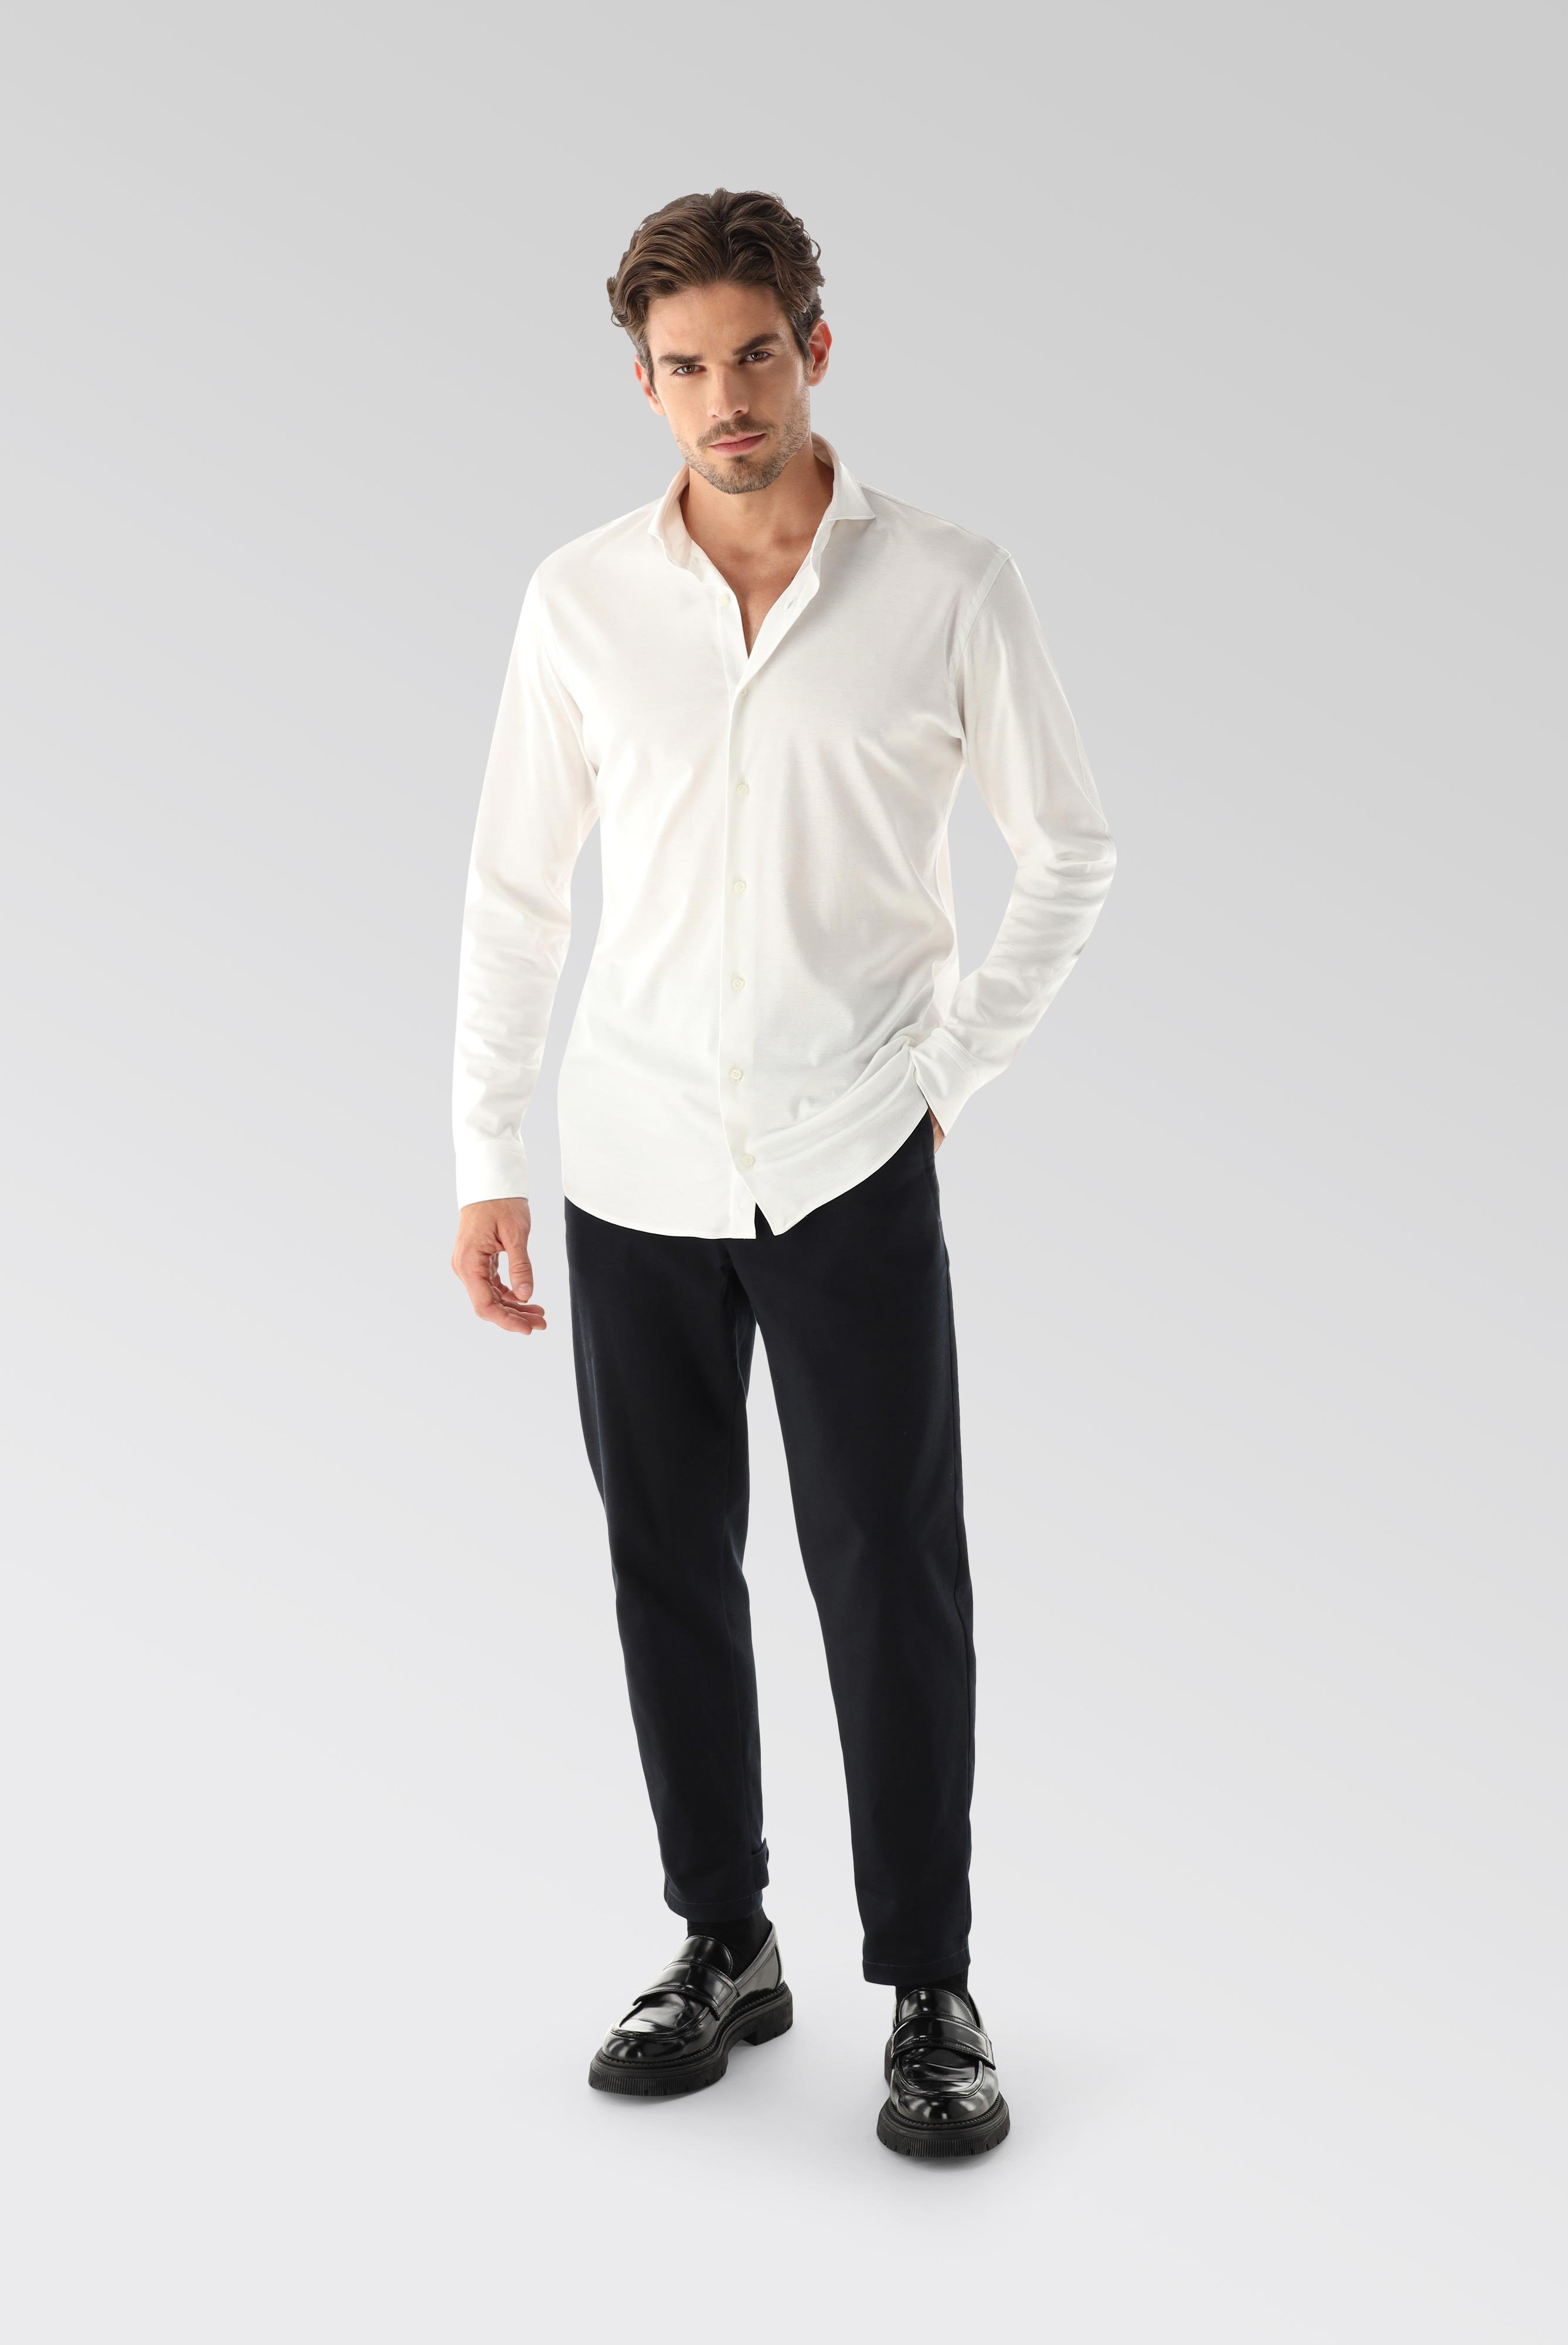 Bügelleichte Hemden+Jersey Hemd mit glänzender Optik Tailor Fit+20.1683.UC.180031.000.XL